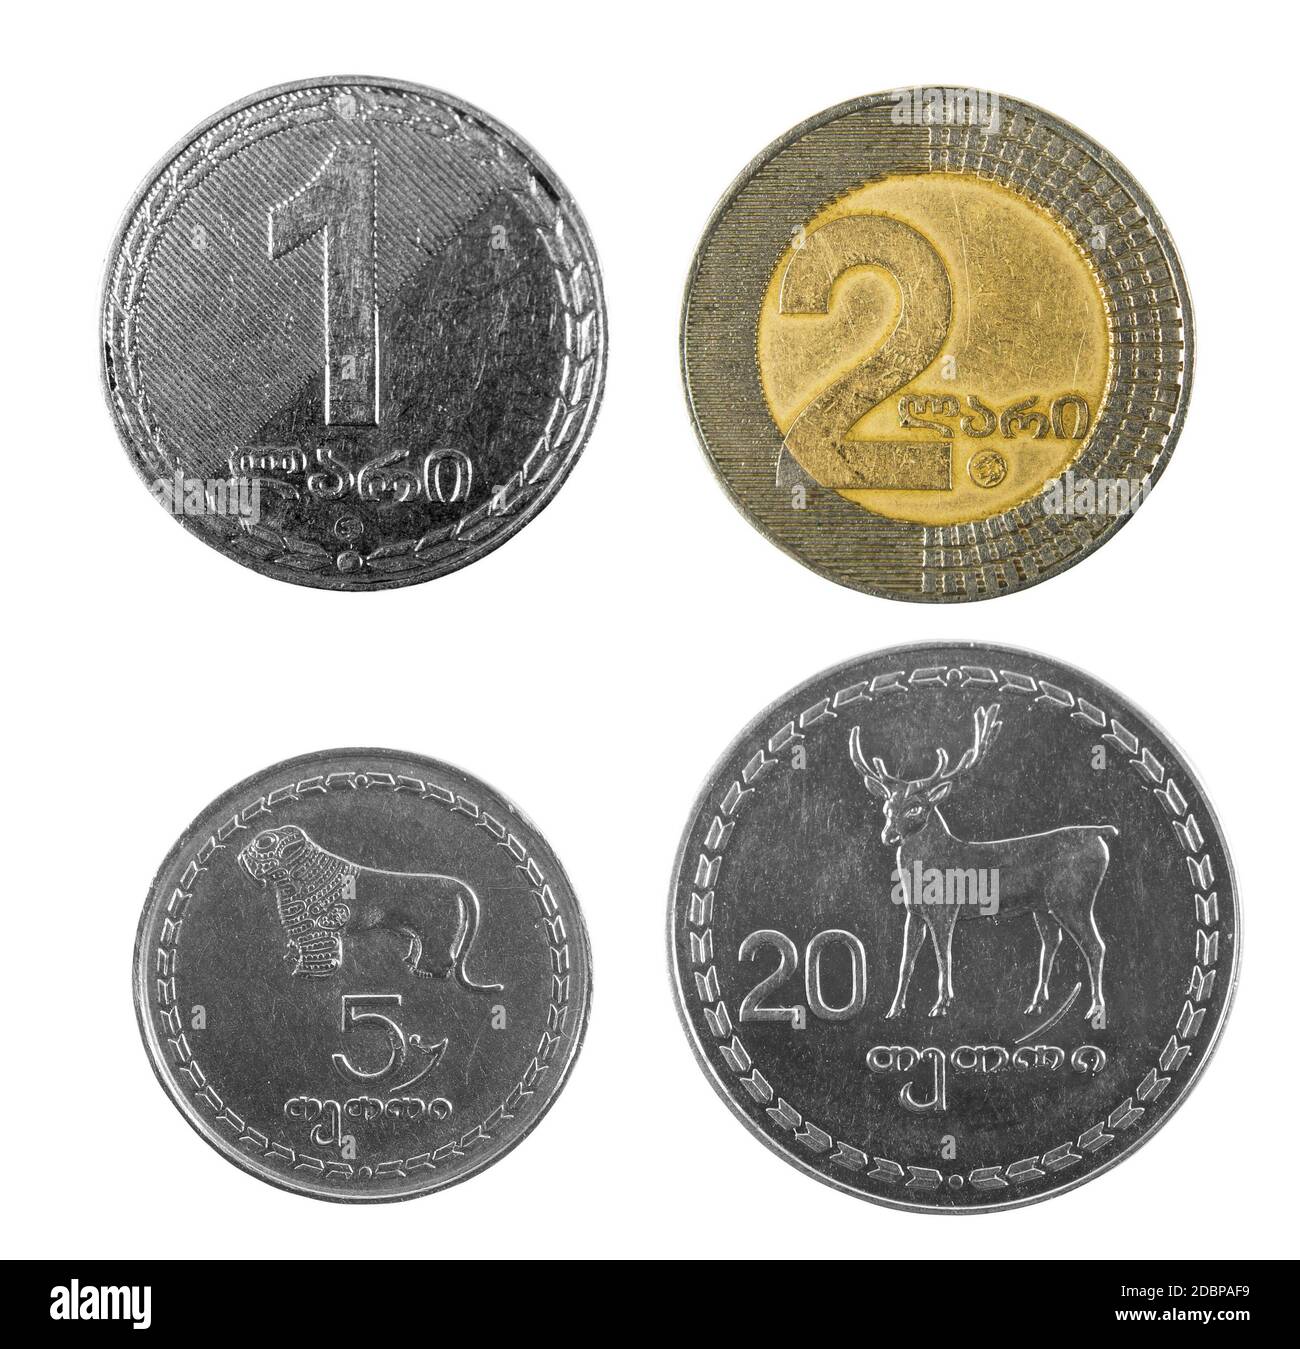 georgian money lari coins on white Stock Photo